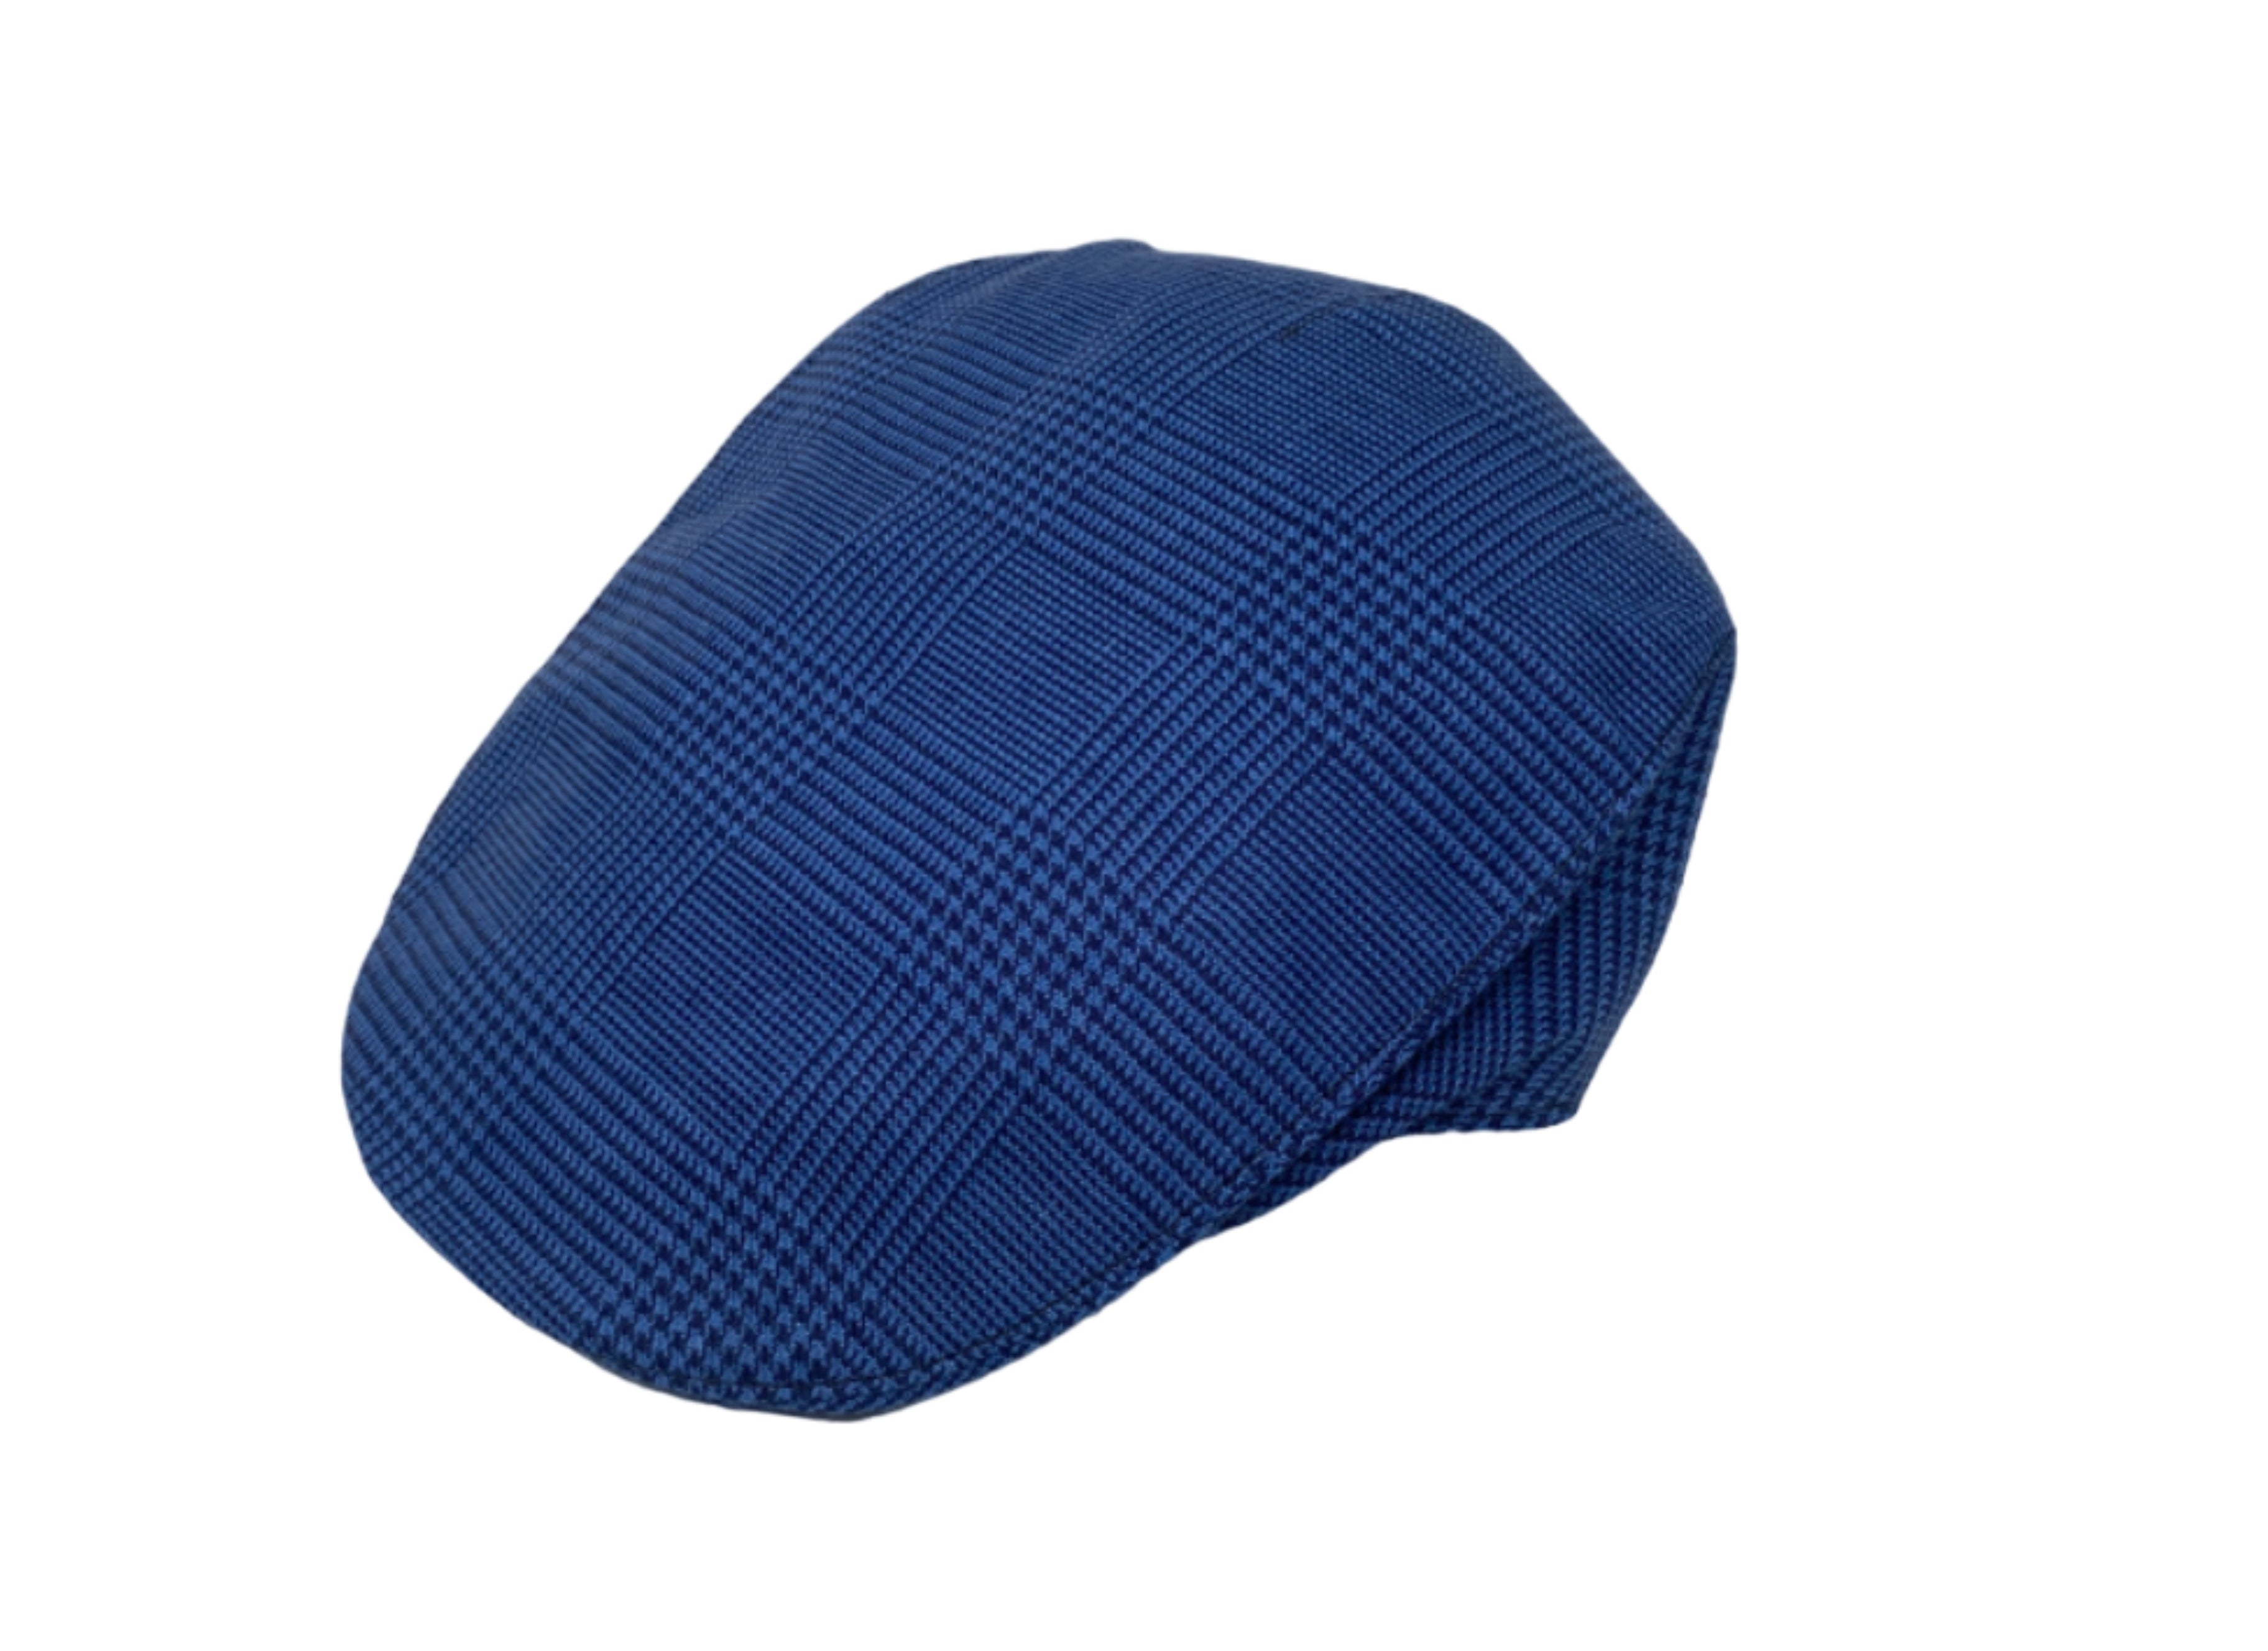 Flat Caps - Tweed, Linen & Wax